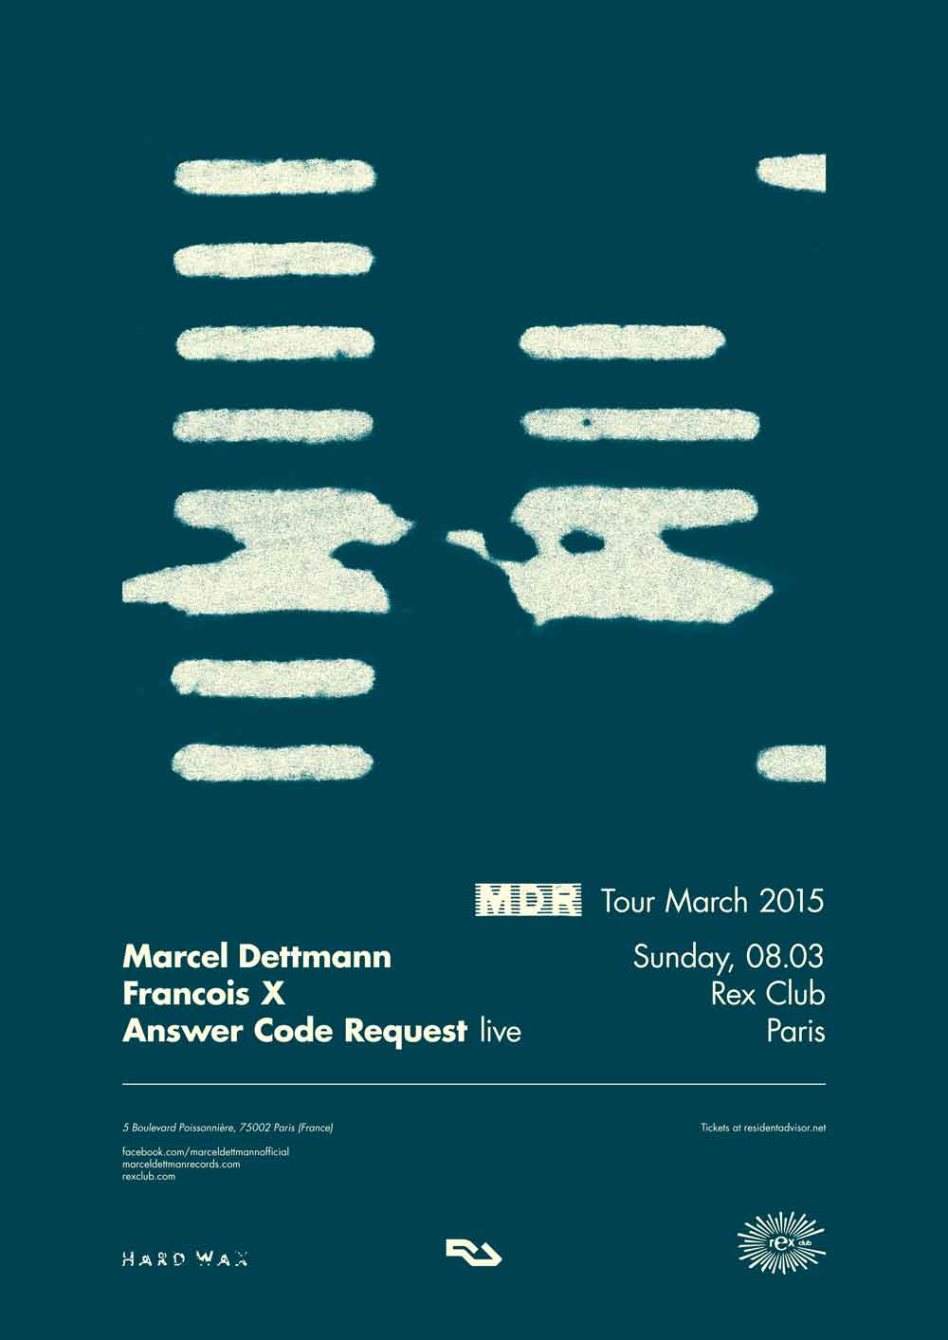 MDR - Marcel Dettmann Records - Página frontal